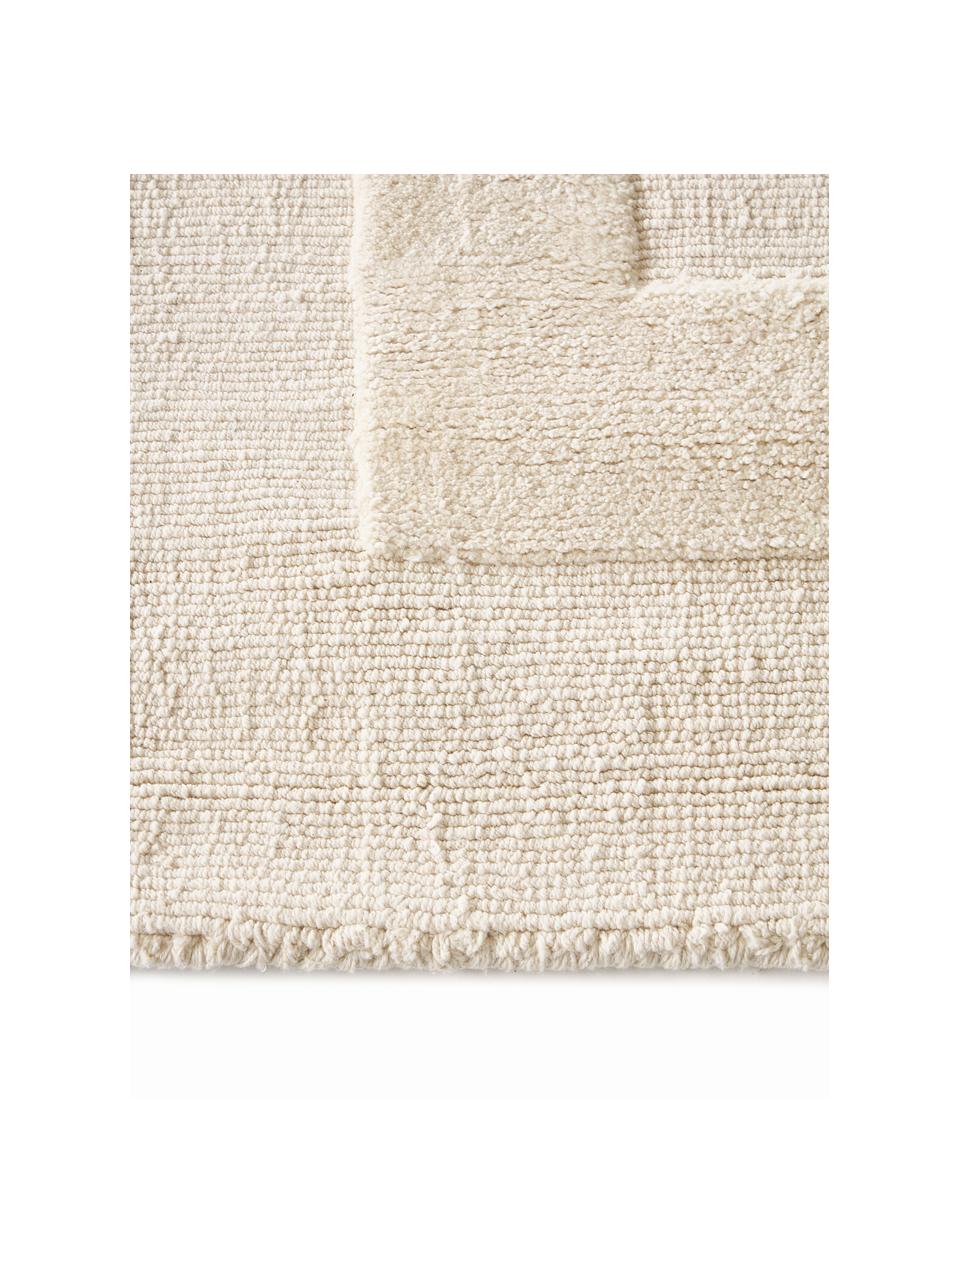 Tappeto in cotone tessuto a mano con motivo a rilievo Dania, 100% cotone, Bianco crema, Larg. 200 x Lung. 300 cm (taglia L)